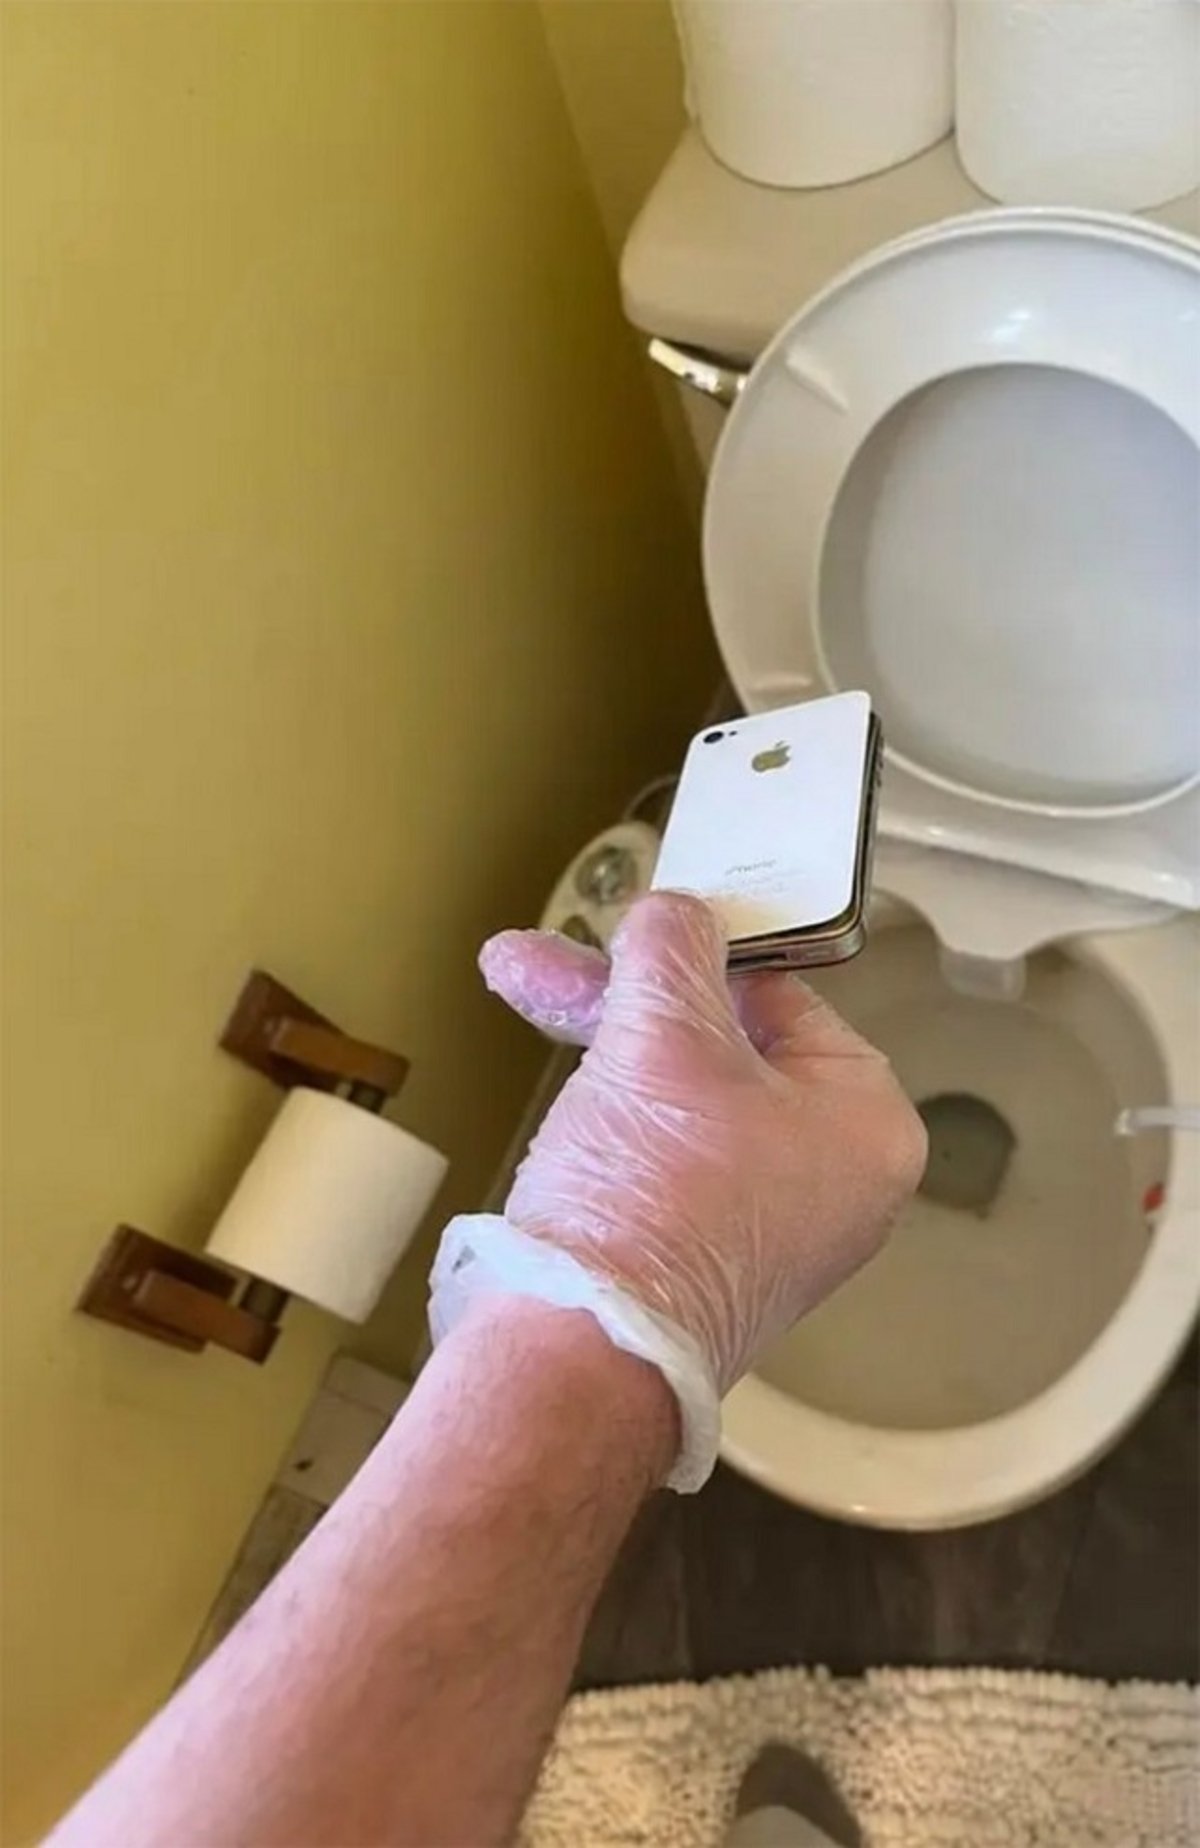 Encuentra su iPhone perdido 10 años después dentro del inodoro